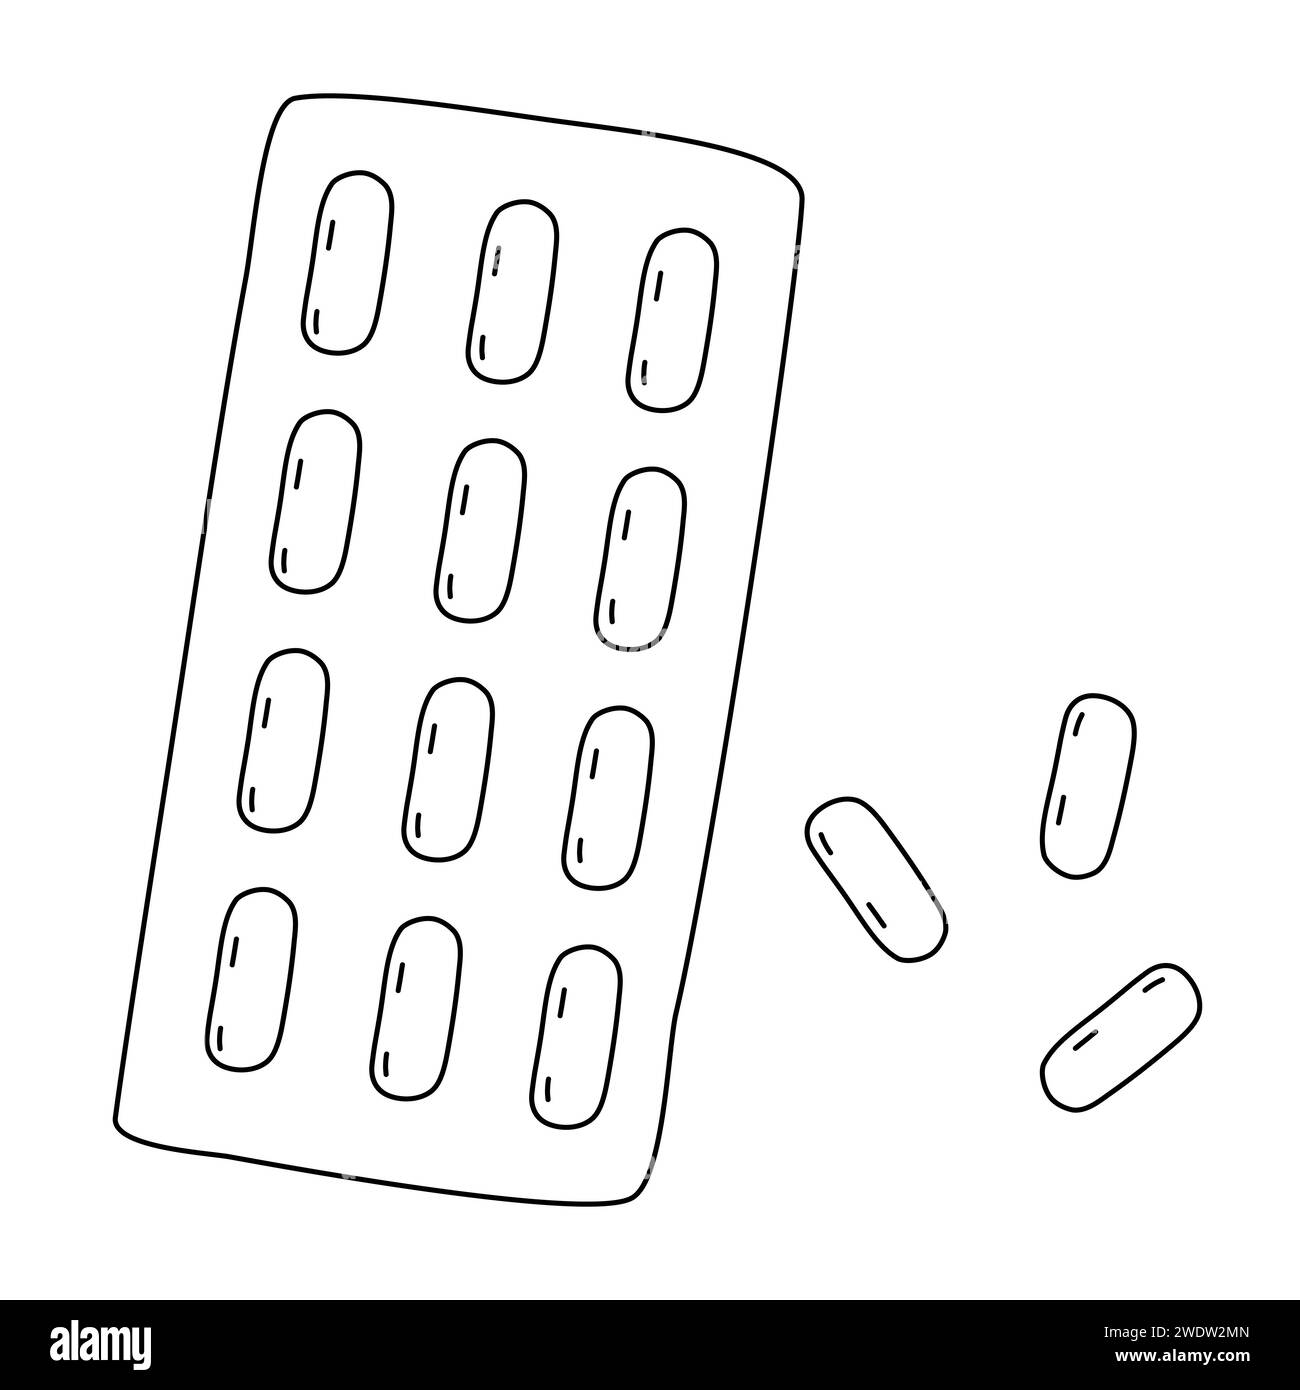 Ovale Tabletten, Lutschtabletten oder Pillen in Blisterpackung, Kälte- und Grippebehandlung, Doodle-Stil flache Vektor-Umrissillustration für Kinder Malbuch Stock Vektor